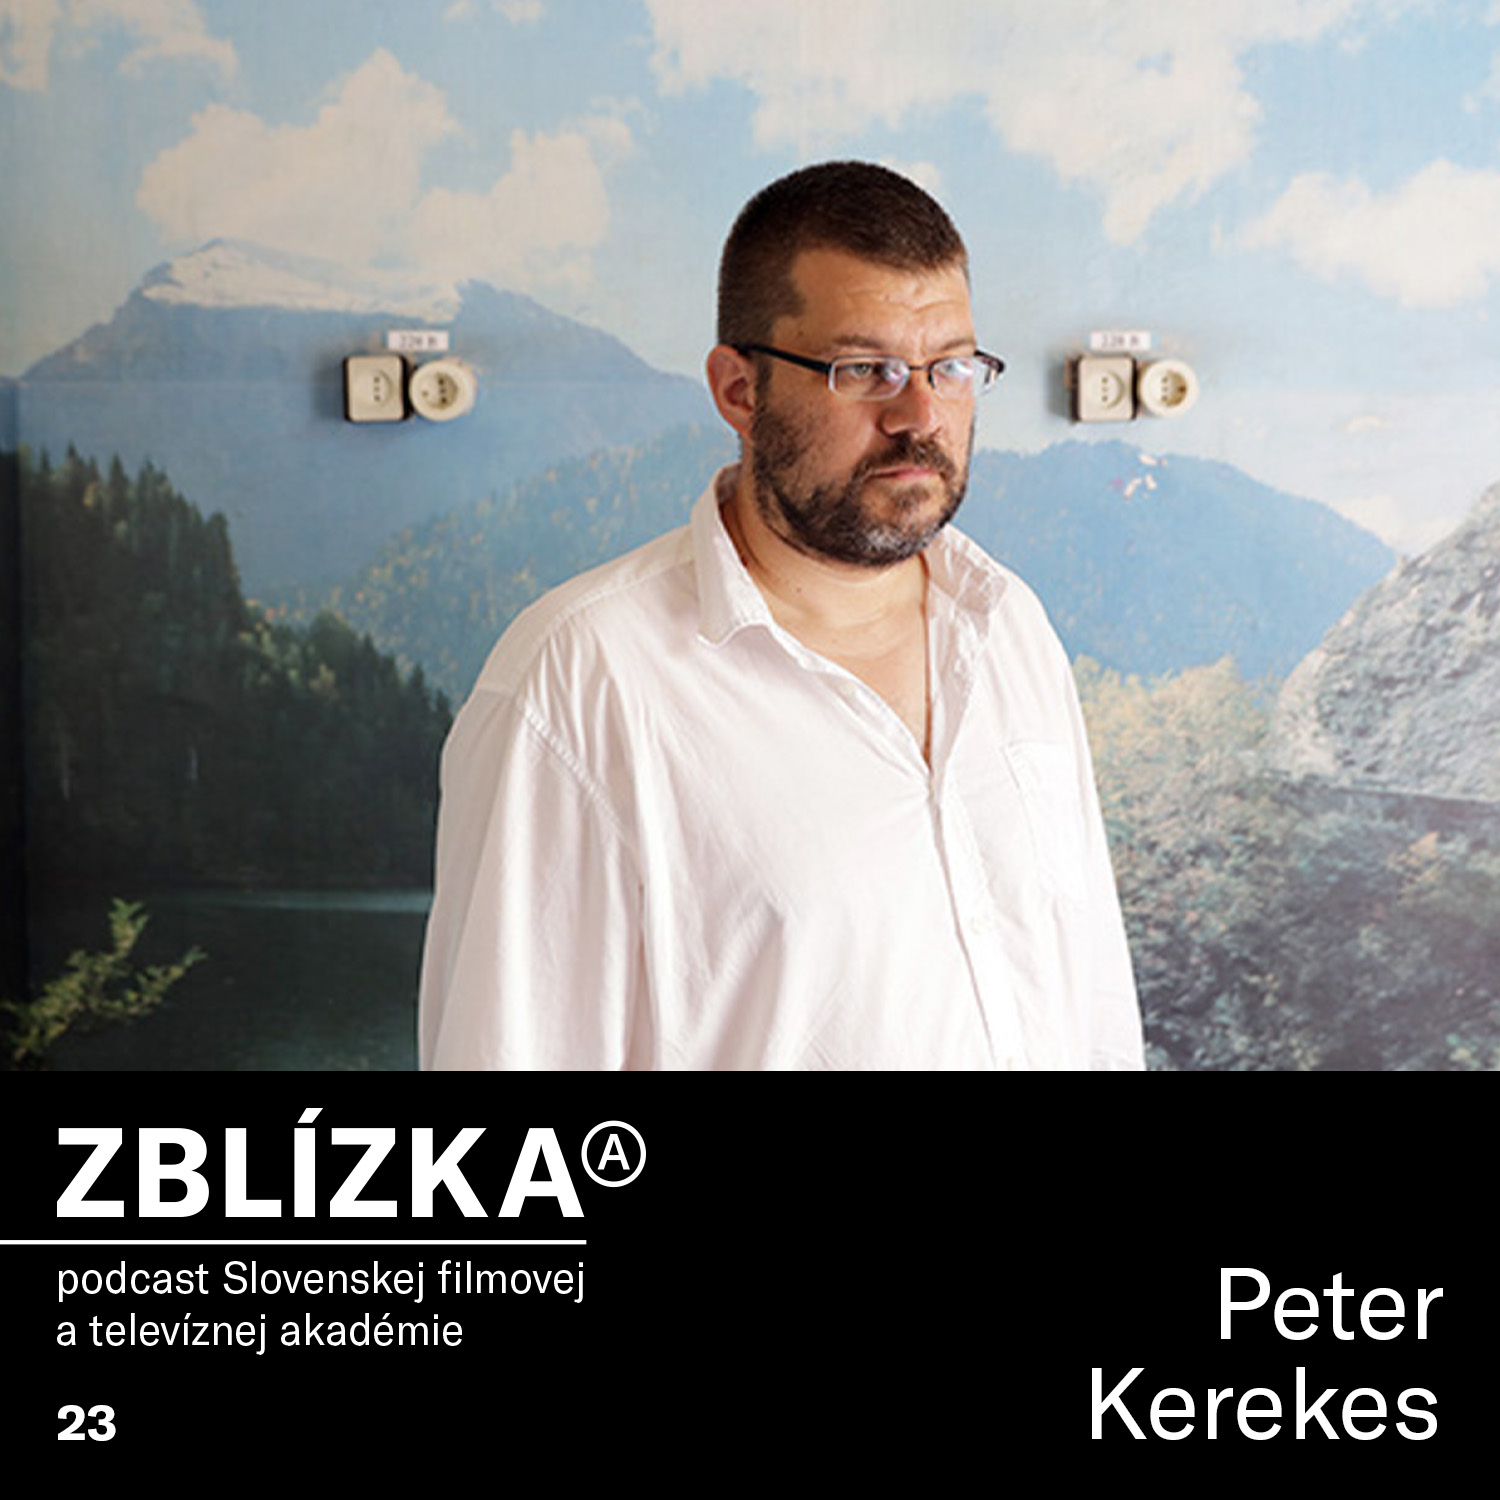 Peter Kerekes: Hľadám odpovede na svoje otázky